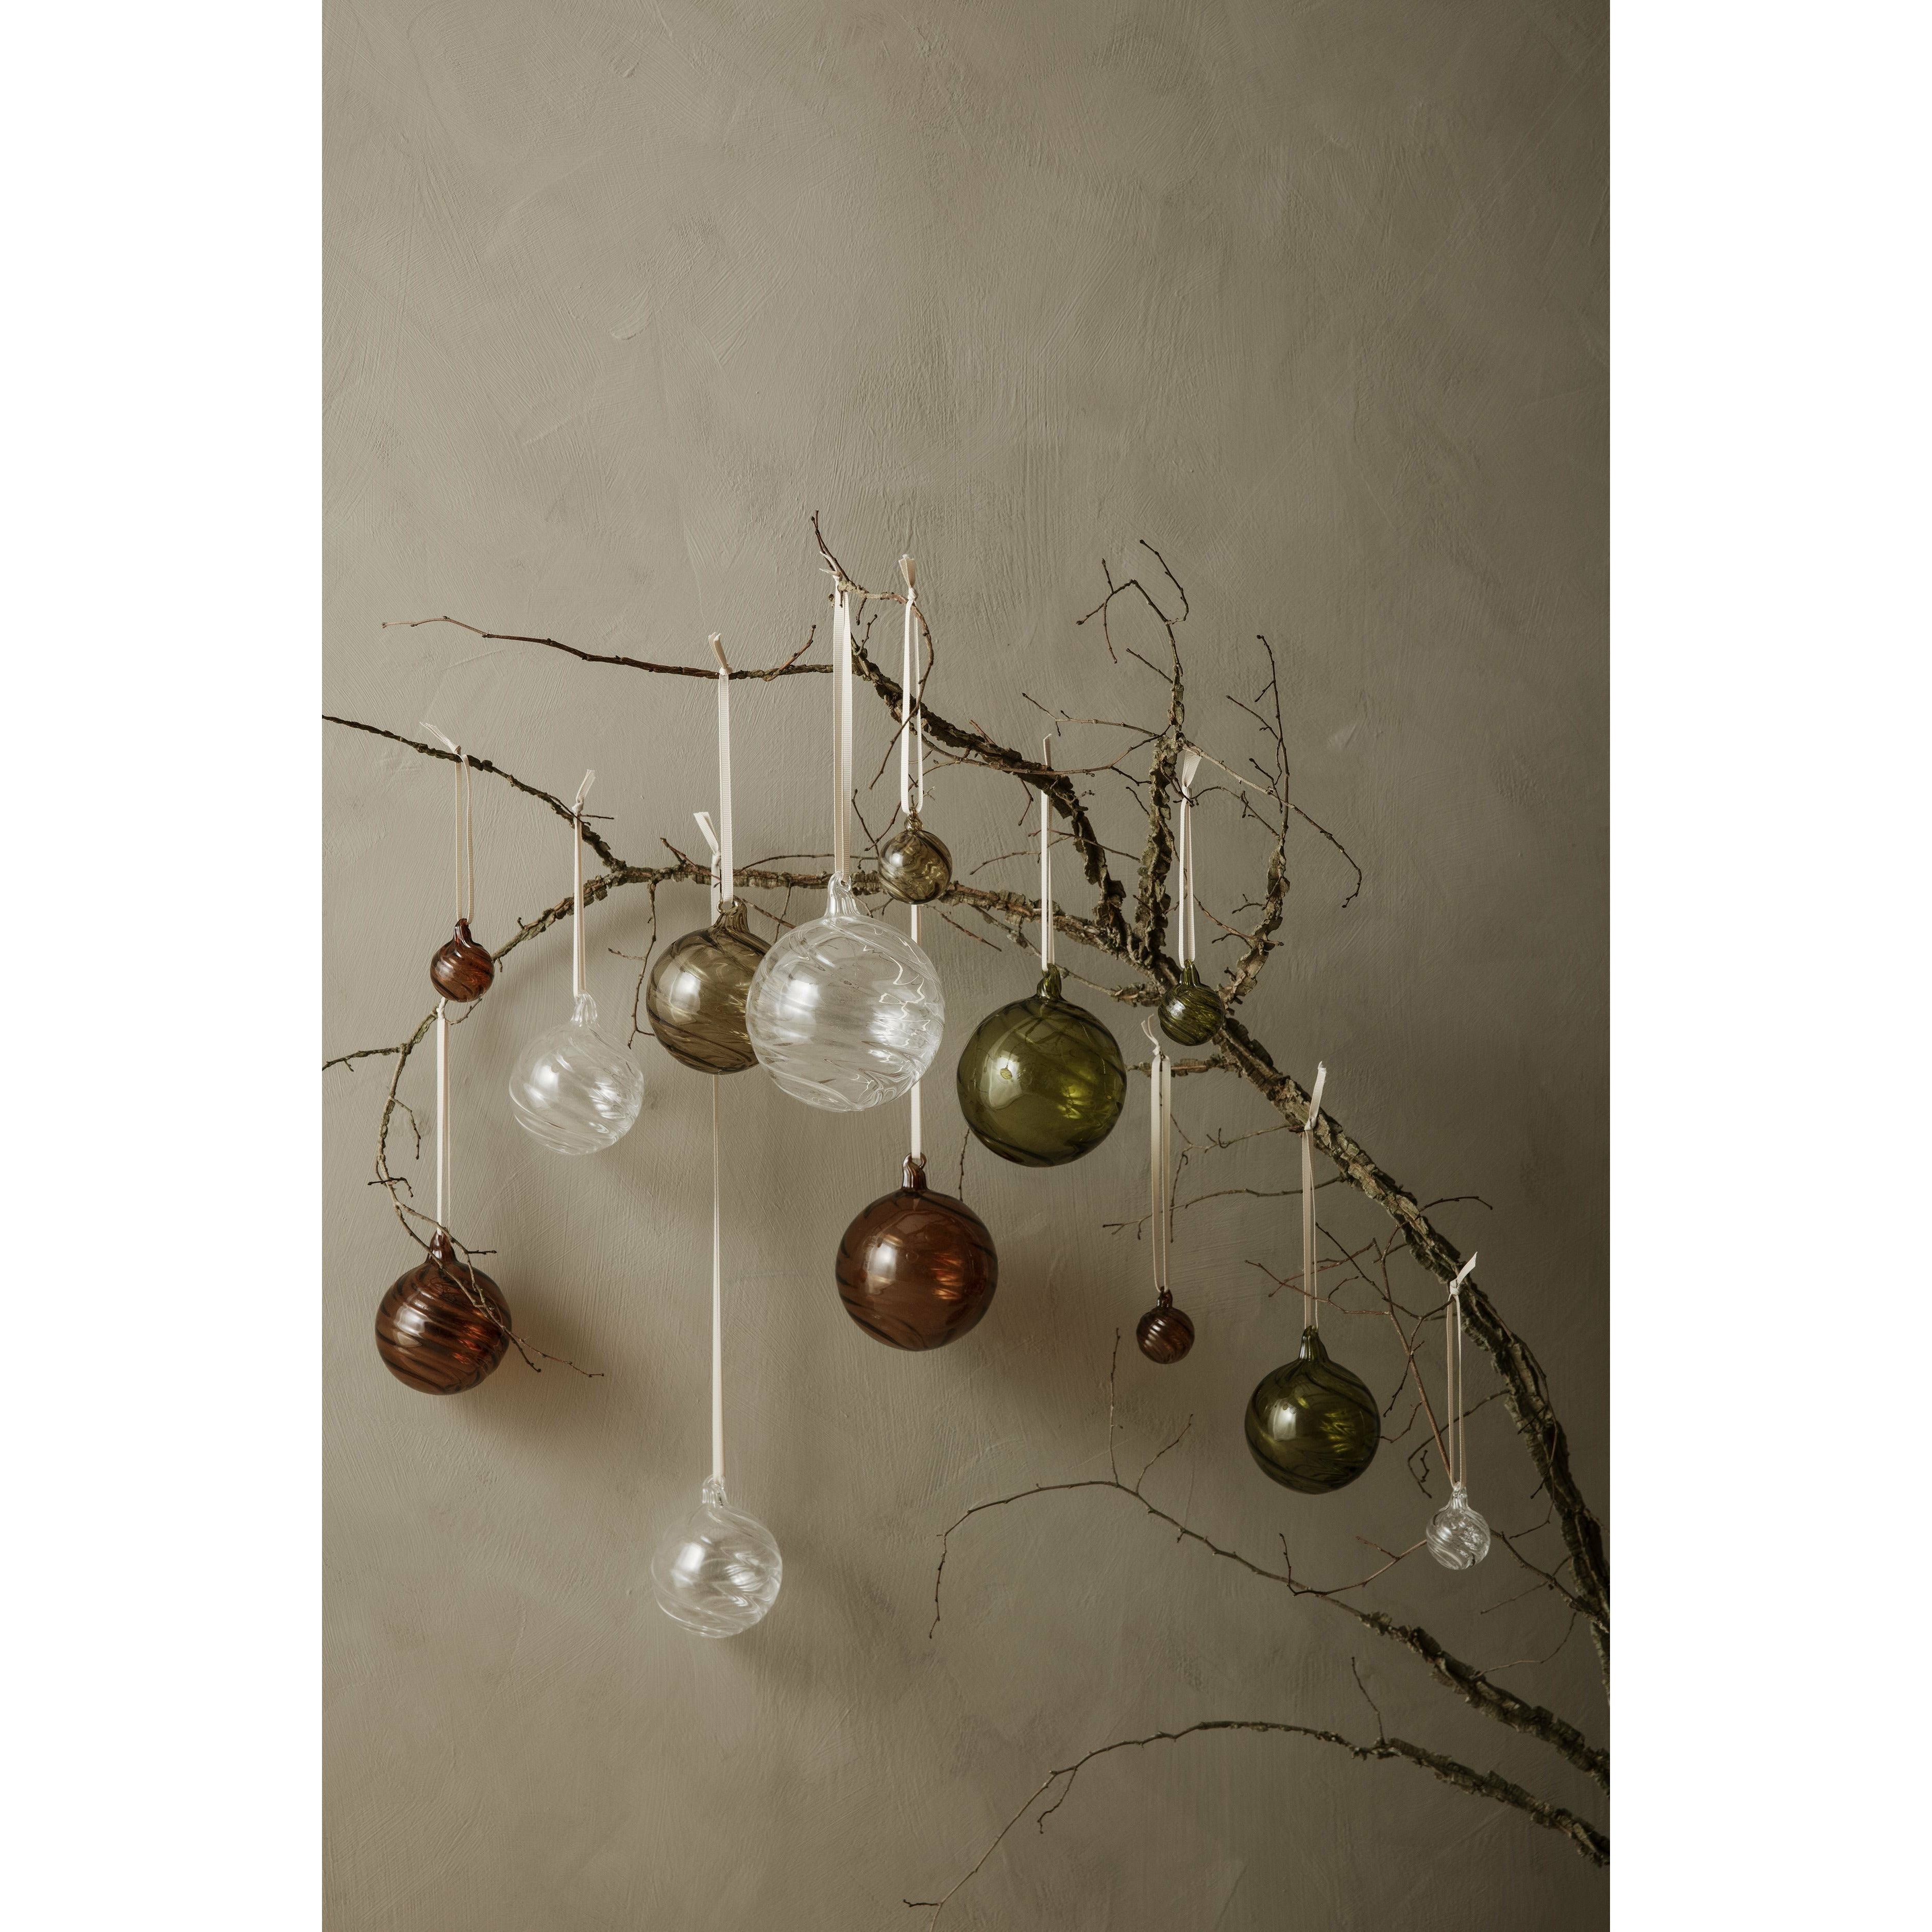 Ferm Living Twirl Ornaments Set Of 8, øx H 4x4,5 Cm